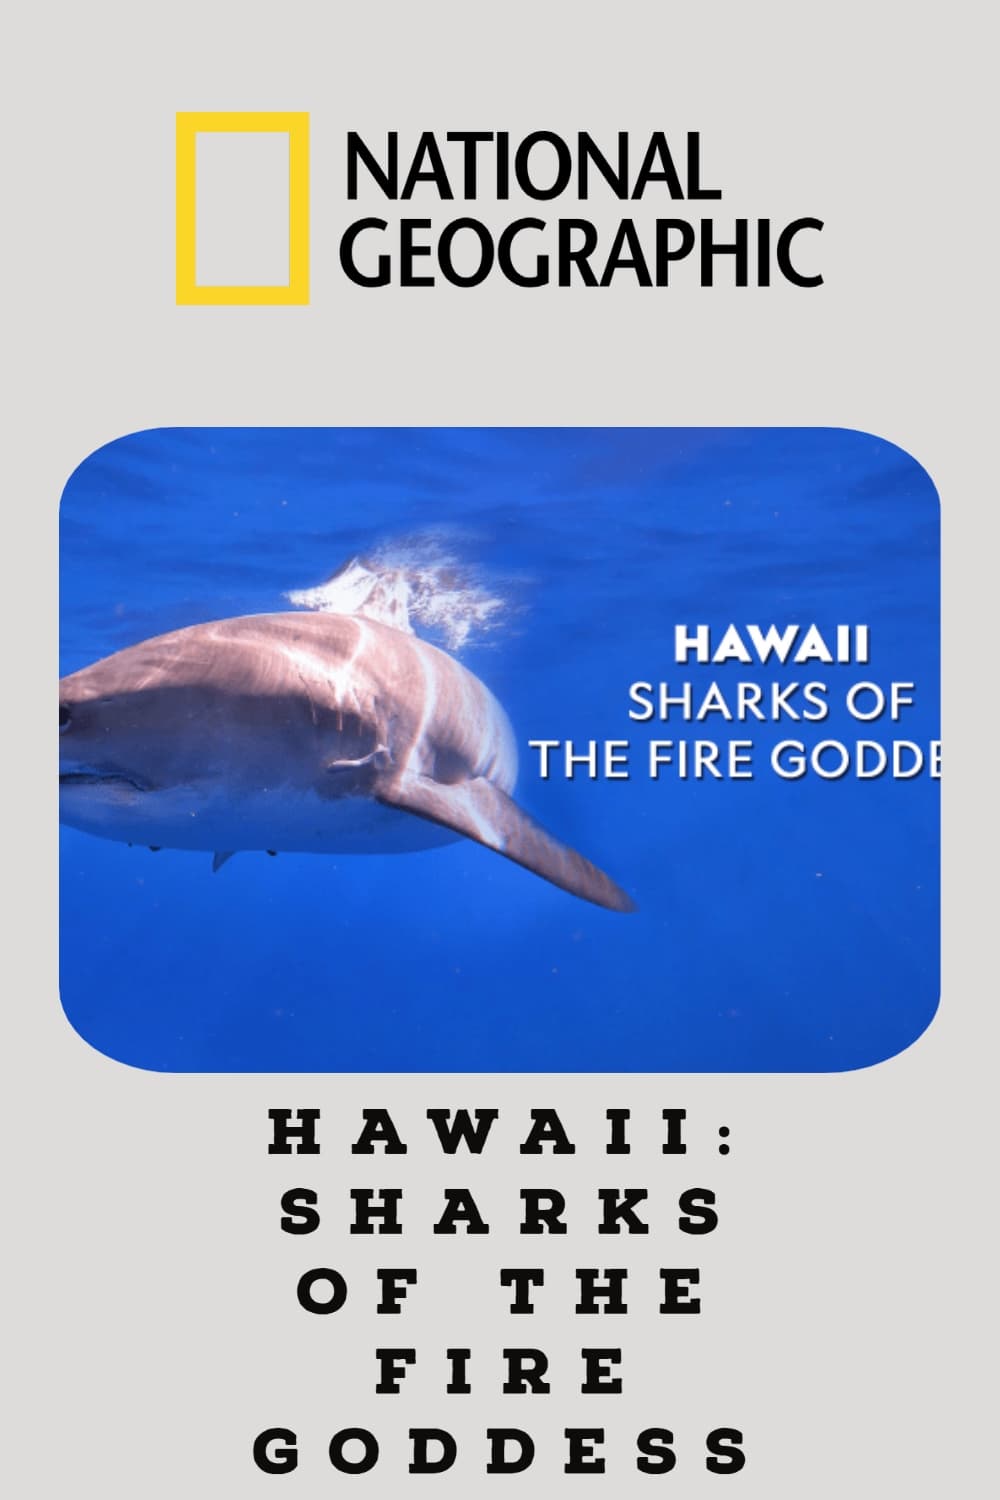 Hawaii: Sharks of the Fire Goddess